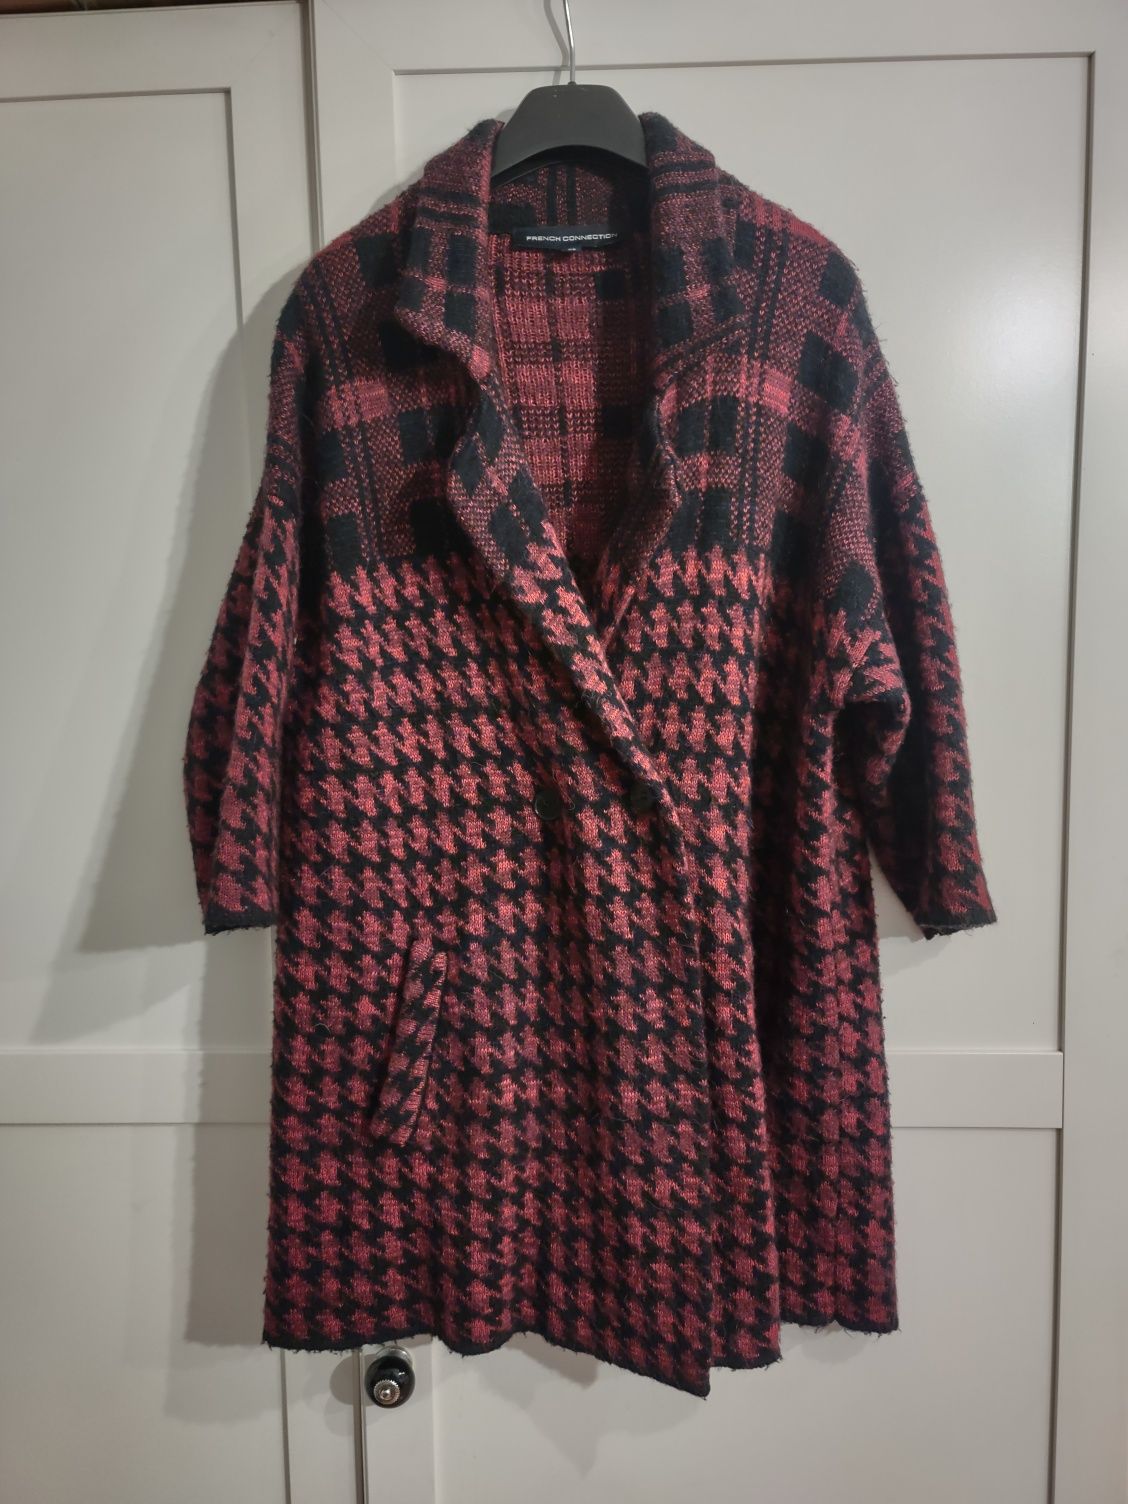 Sweter, narzutka w kratkę czerwono-czarną, rozmiar S/M